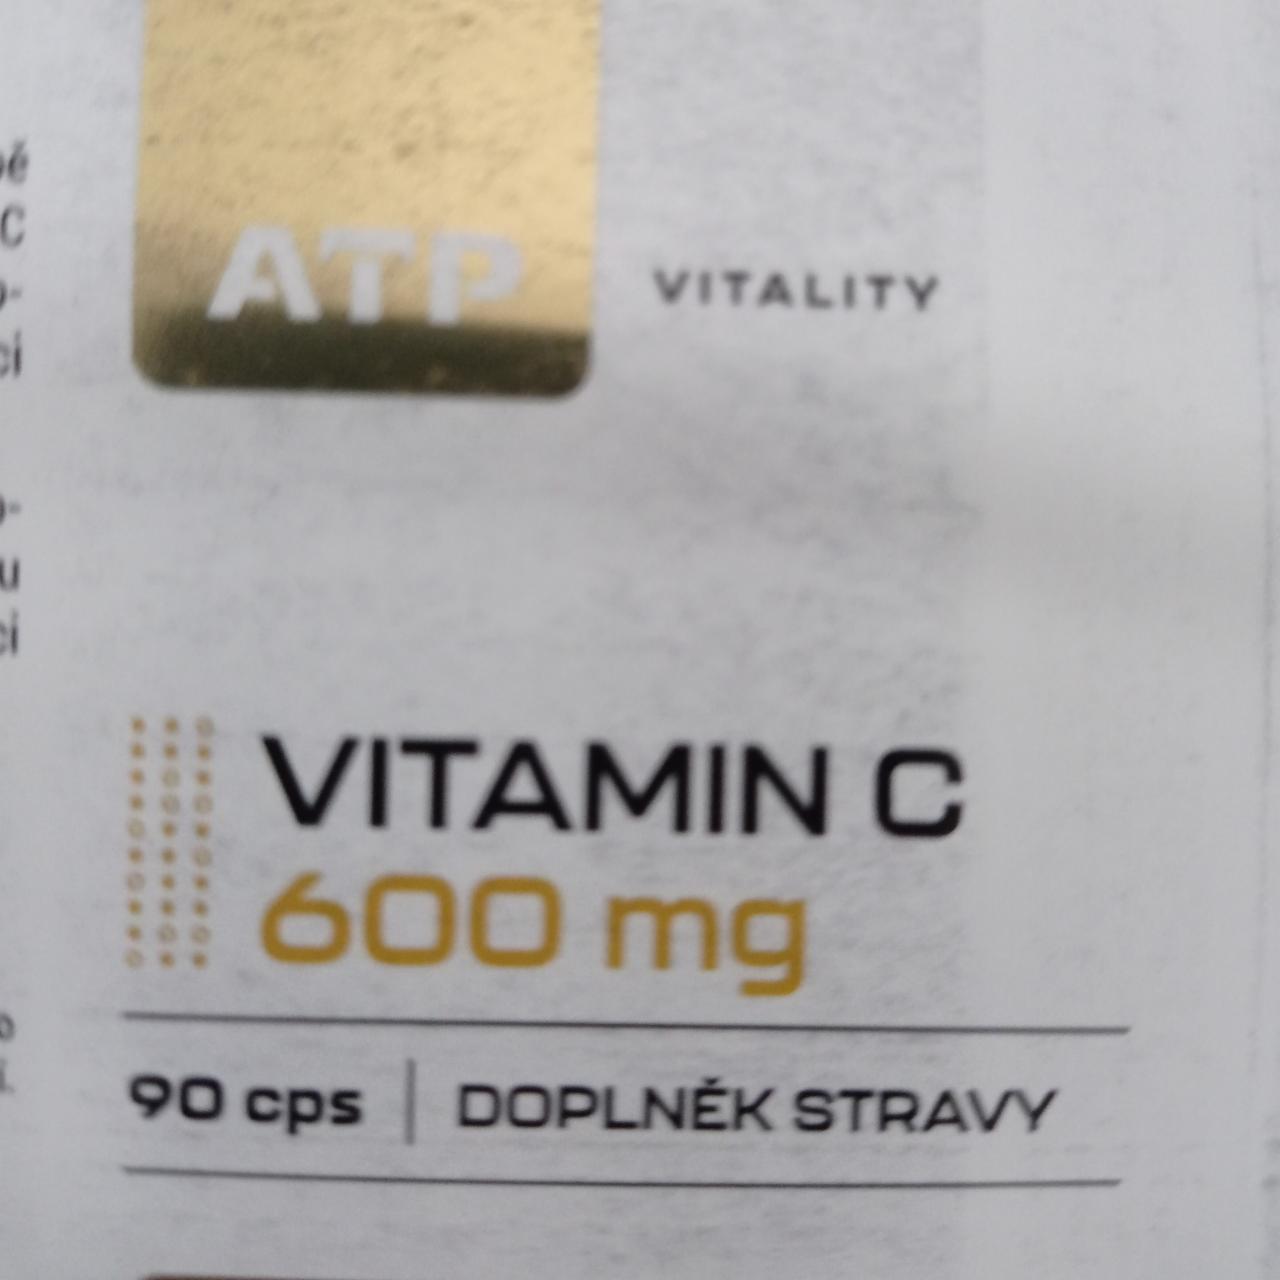 Fotografie - Vitamin C 600mg ATP Vitality